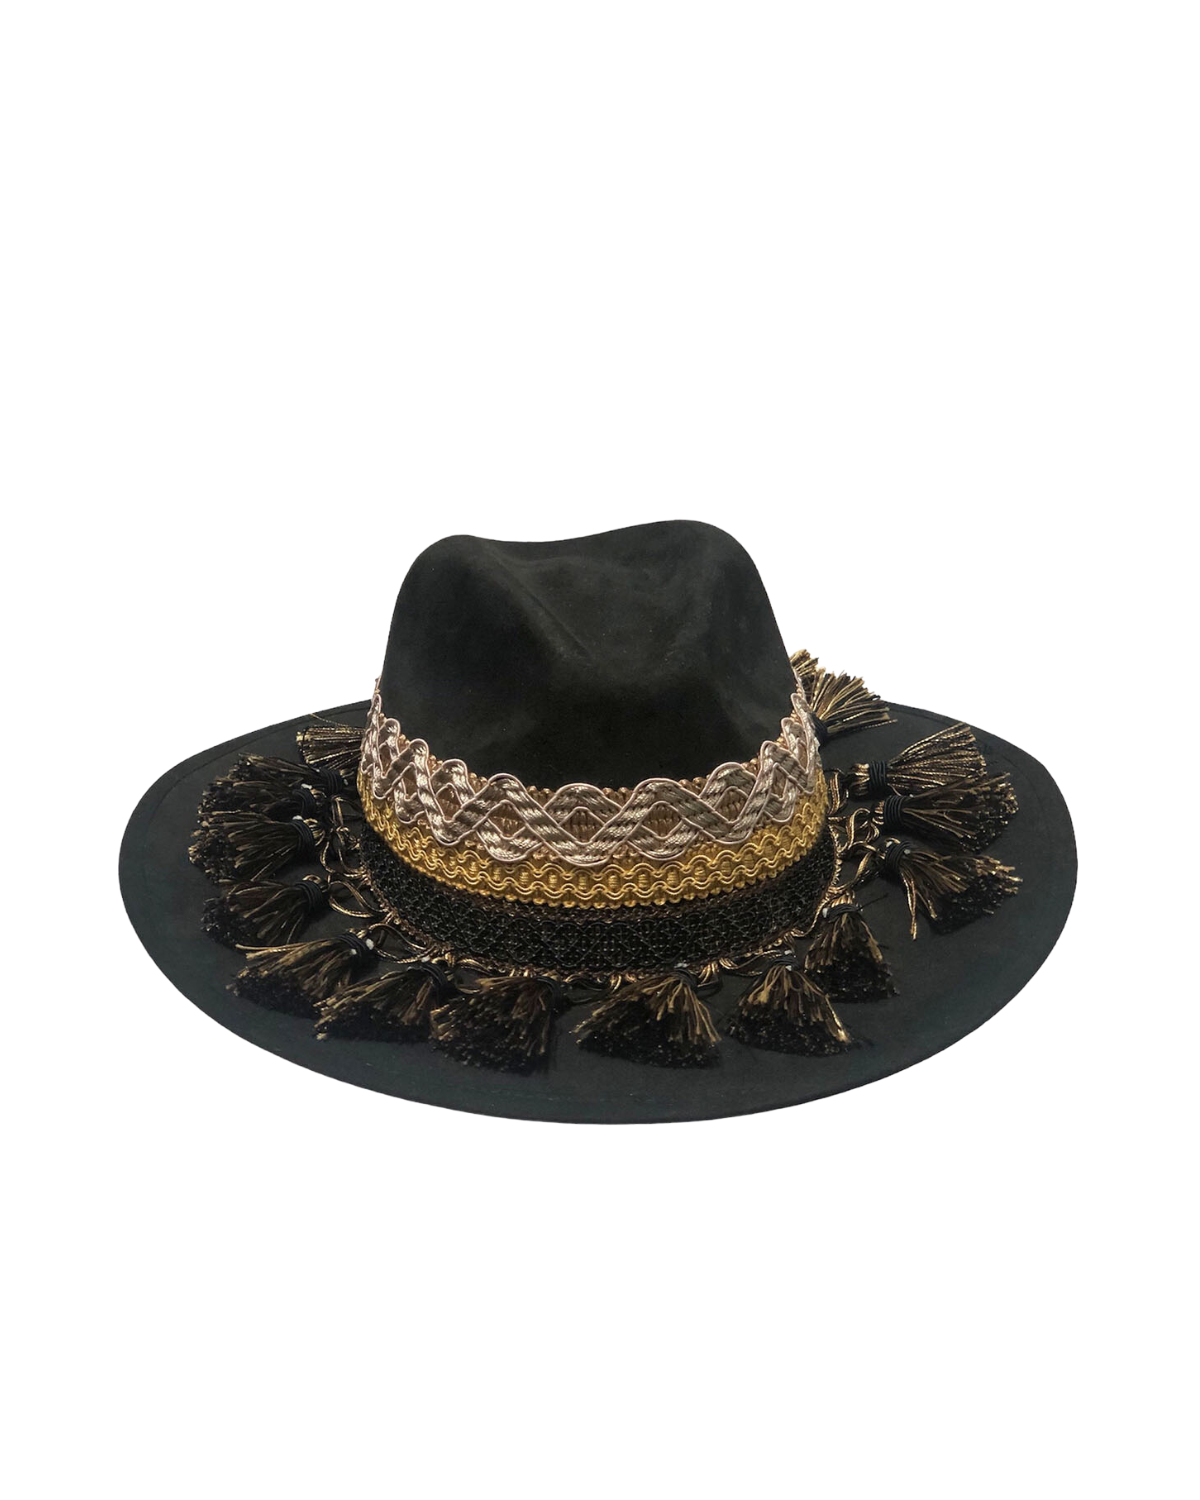 Sombrero black, negro toquilla ancha borlas negro/beige talla mediano